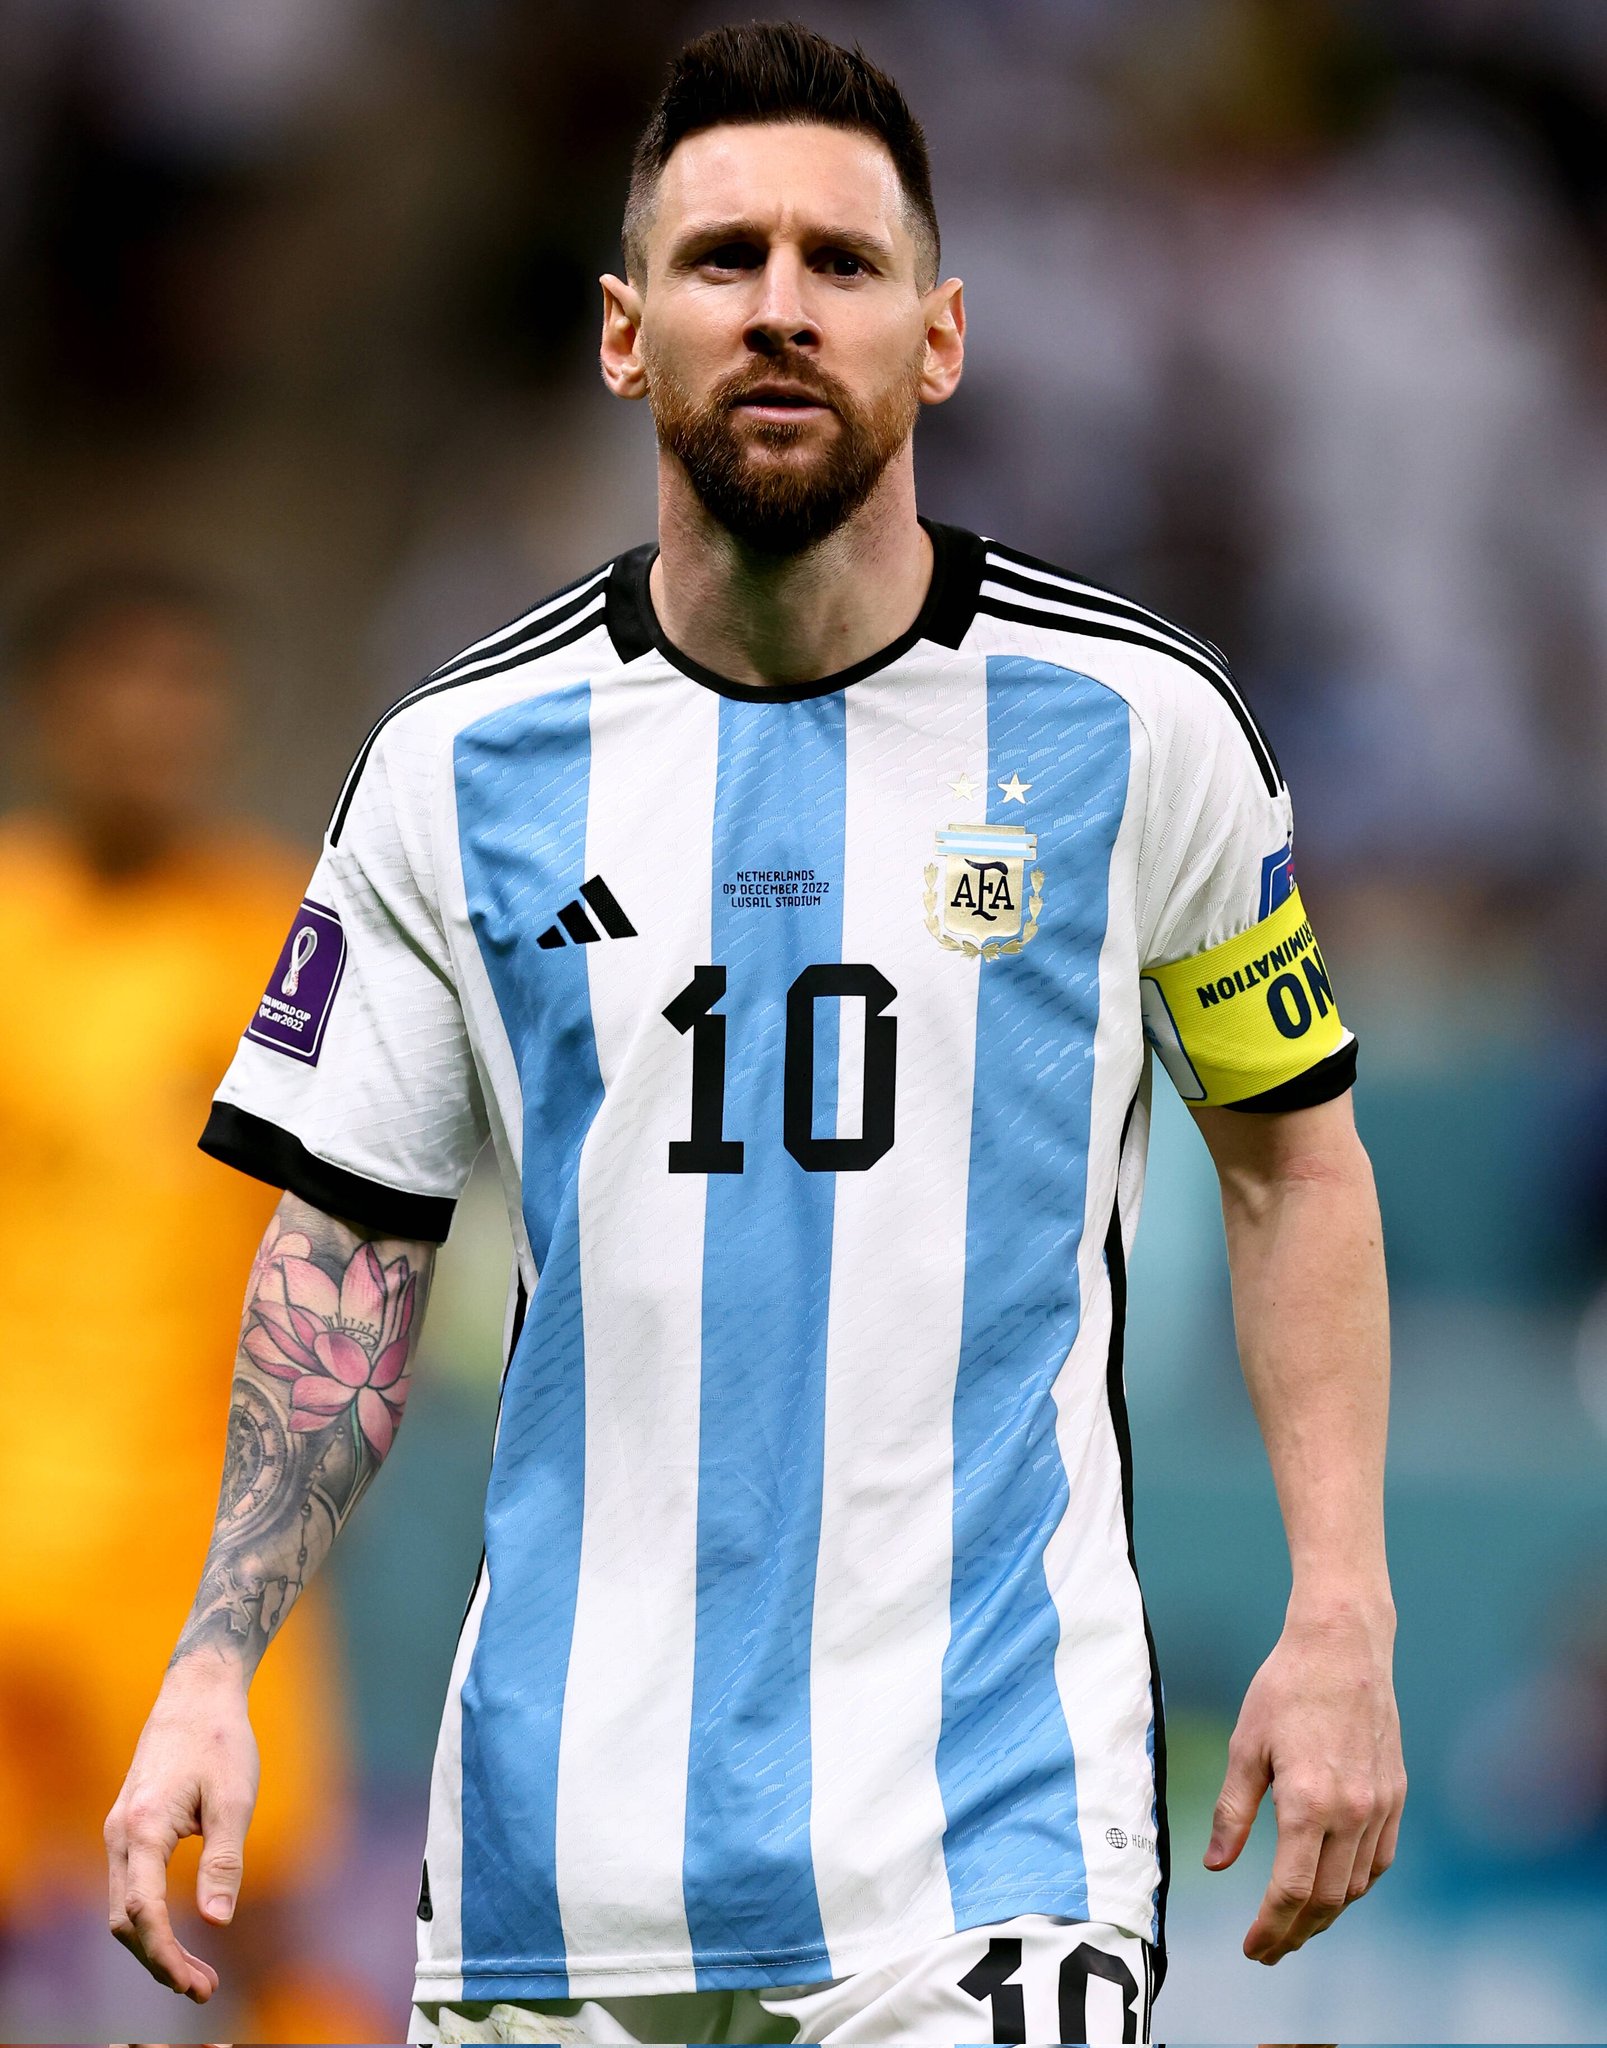 Với thông tin mới nhất về Lionel Messi, bạn sẽ không bỏ lỡ bất kỳ tin tức quan trọng nào về huyền thoại bóng đá này. Theo dõi Pulse Sports Nigeria trên Twitter để cập nhật tin tức mới nhất về Lionel Messi.